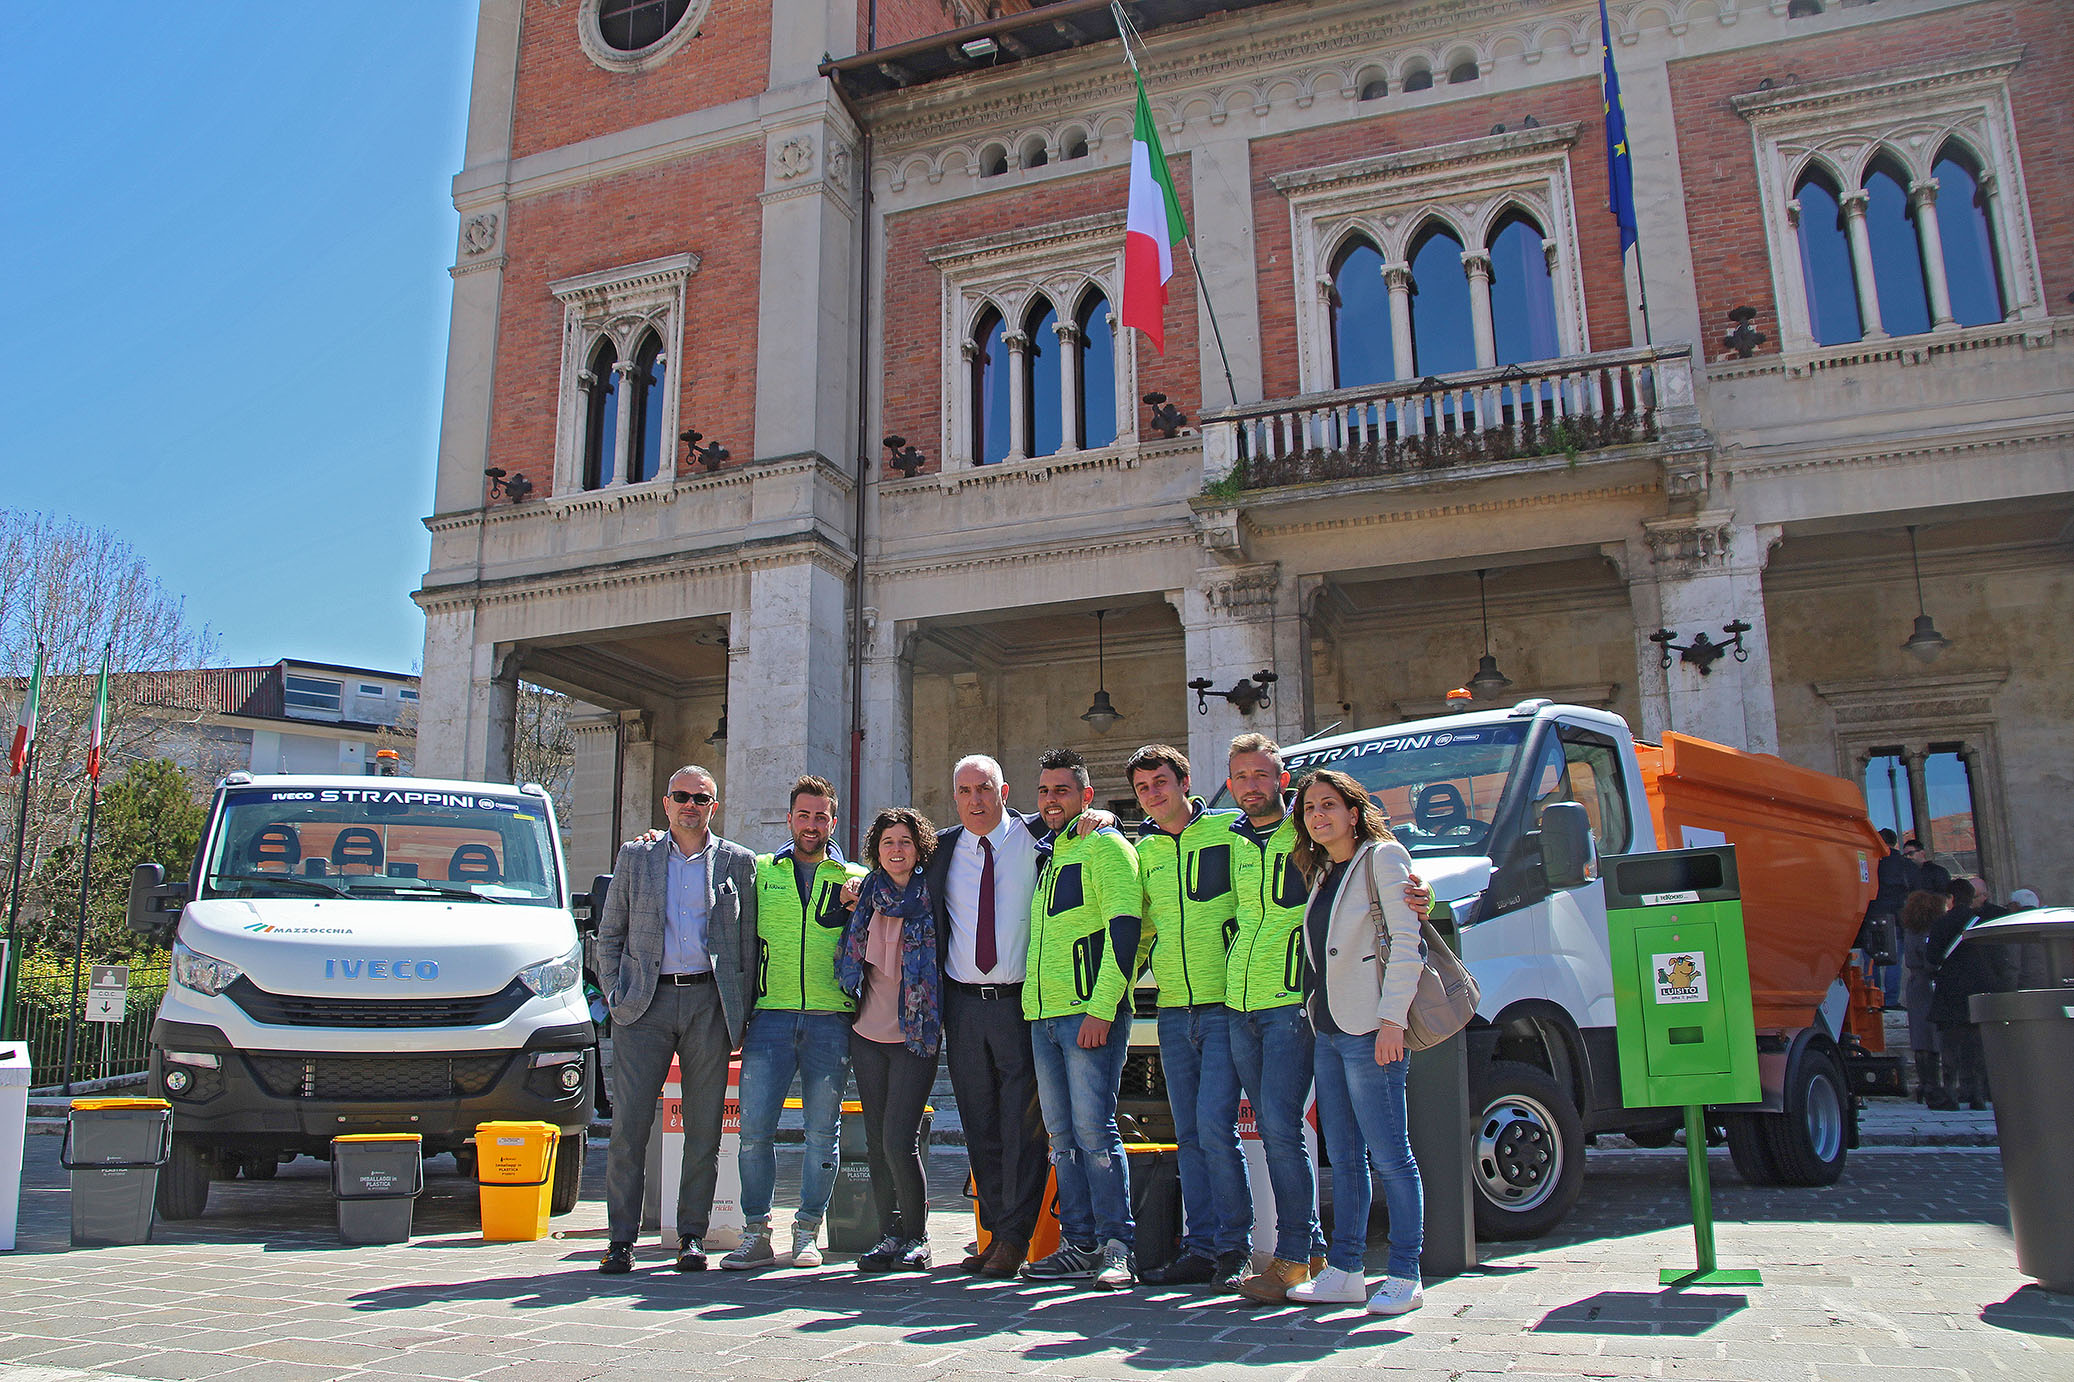 Ecco i nuovi servizi Tekneko per il Comune di Avezzano: lotta agli evasori, maggiore pulizia della città e riduzione della produzione dei rifiuti